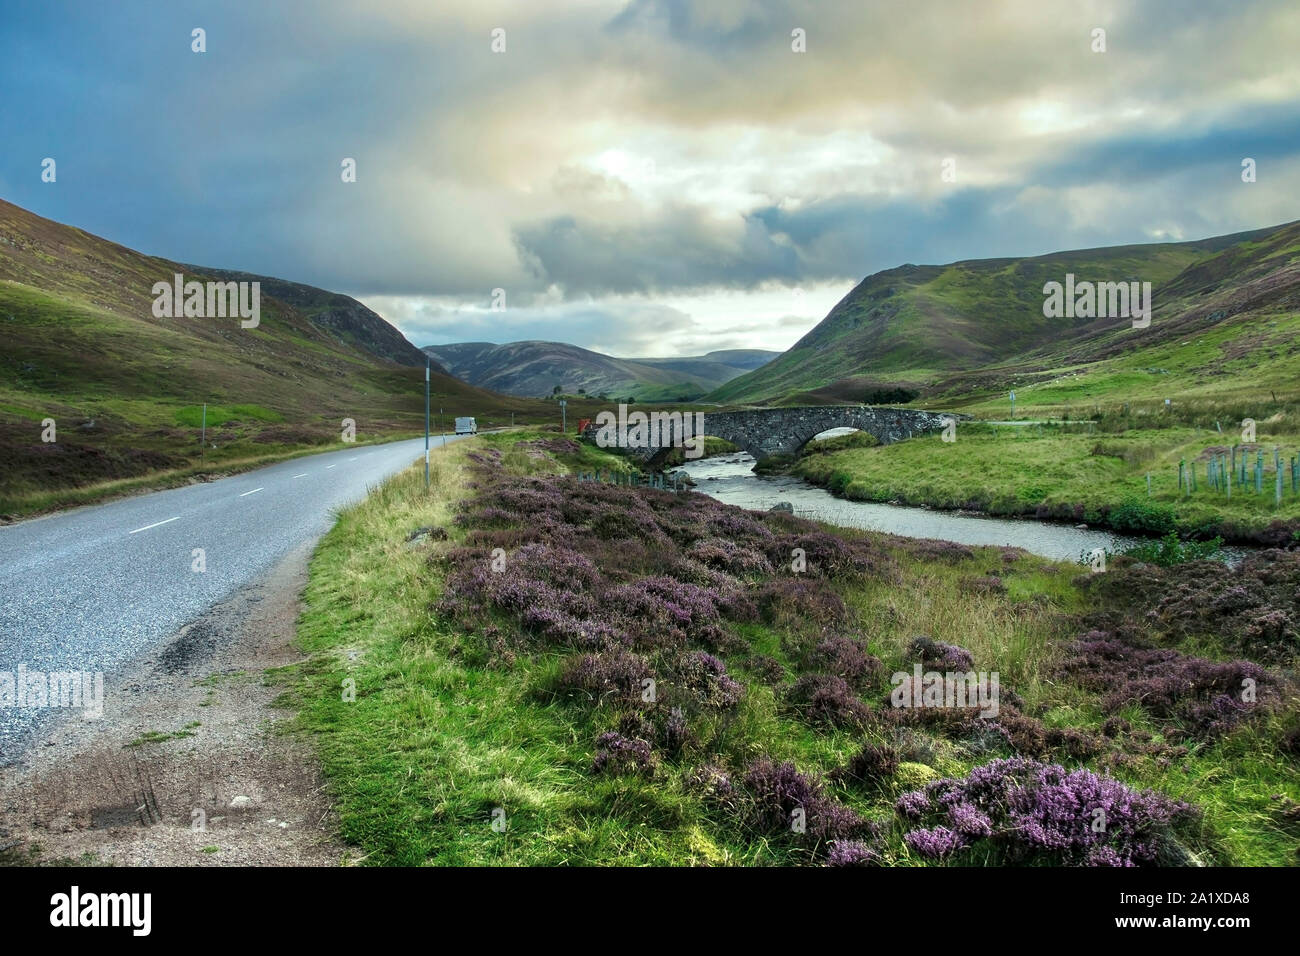 Schottland Landschaft. Alte militärische Straße in Royal Deeside zwischen Braemar und Ballater. Cairngorms National Park. Aberdeenshire, Schottland, Großbritannien. Stockfoto